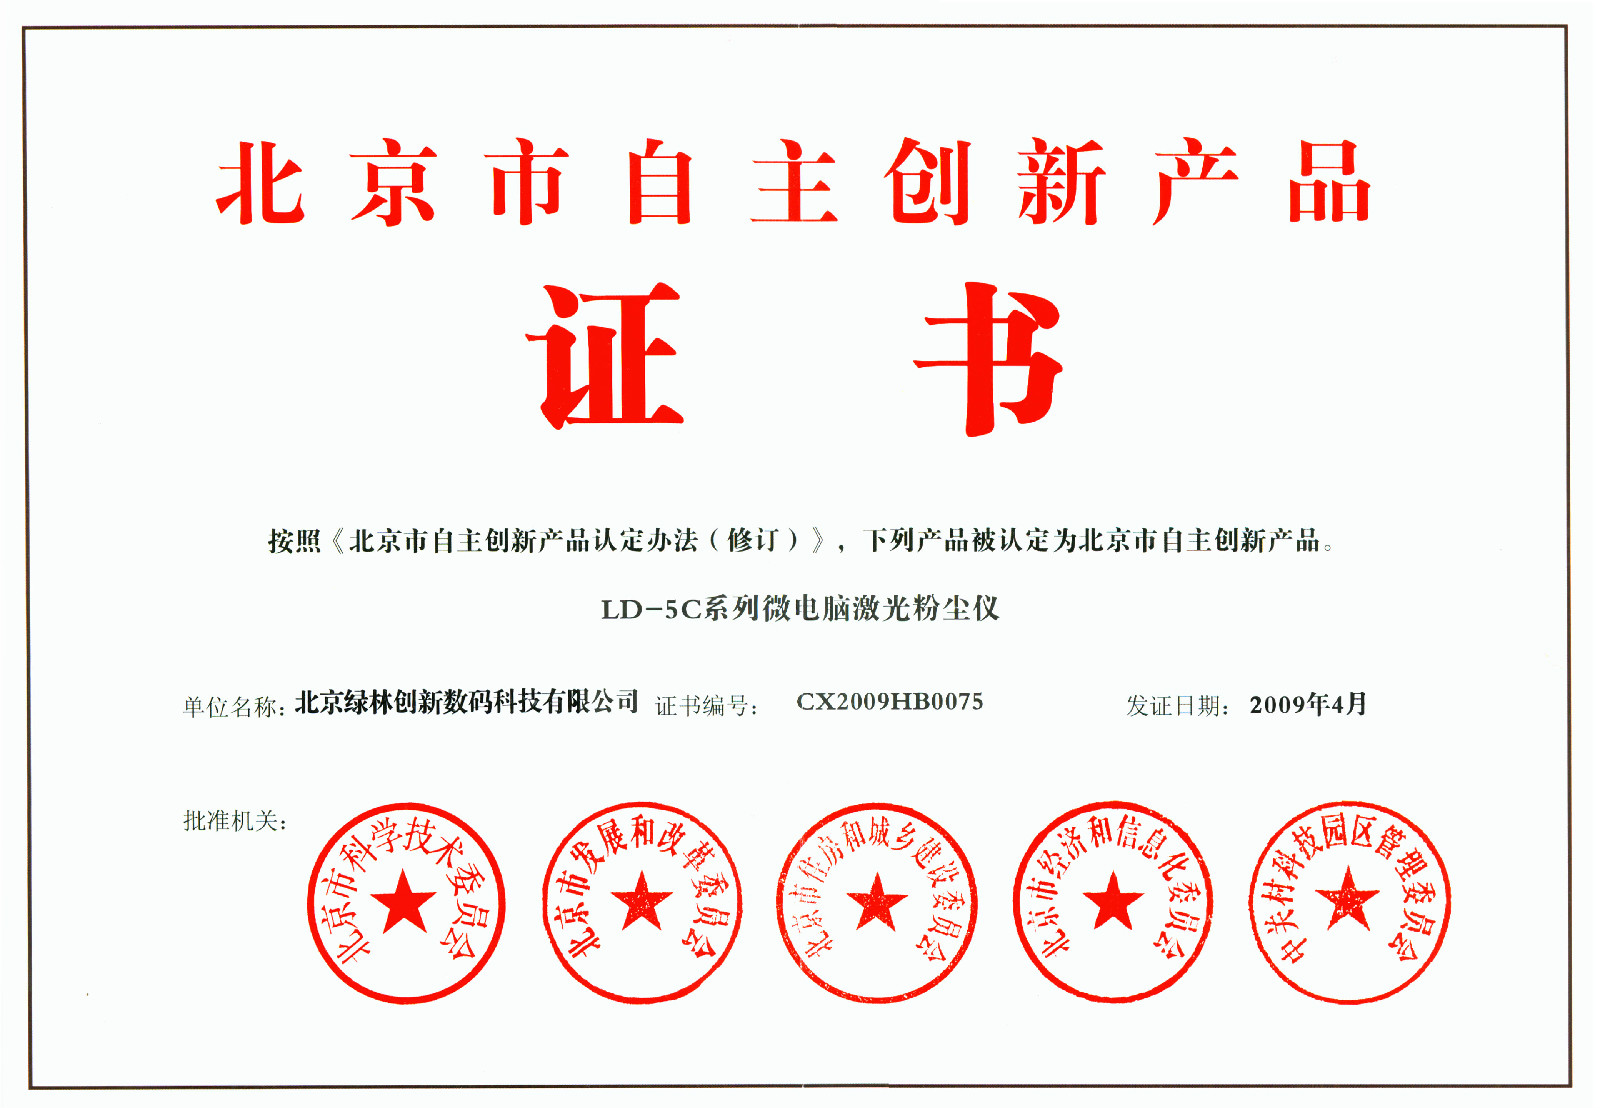 北京綠林創新數碼科技有限公司